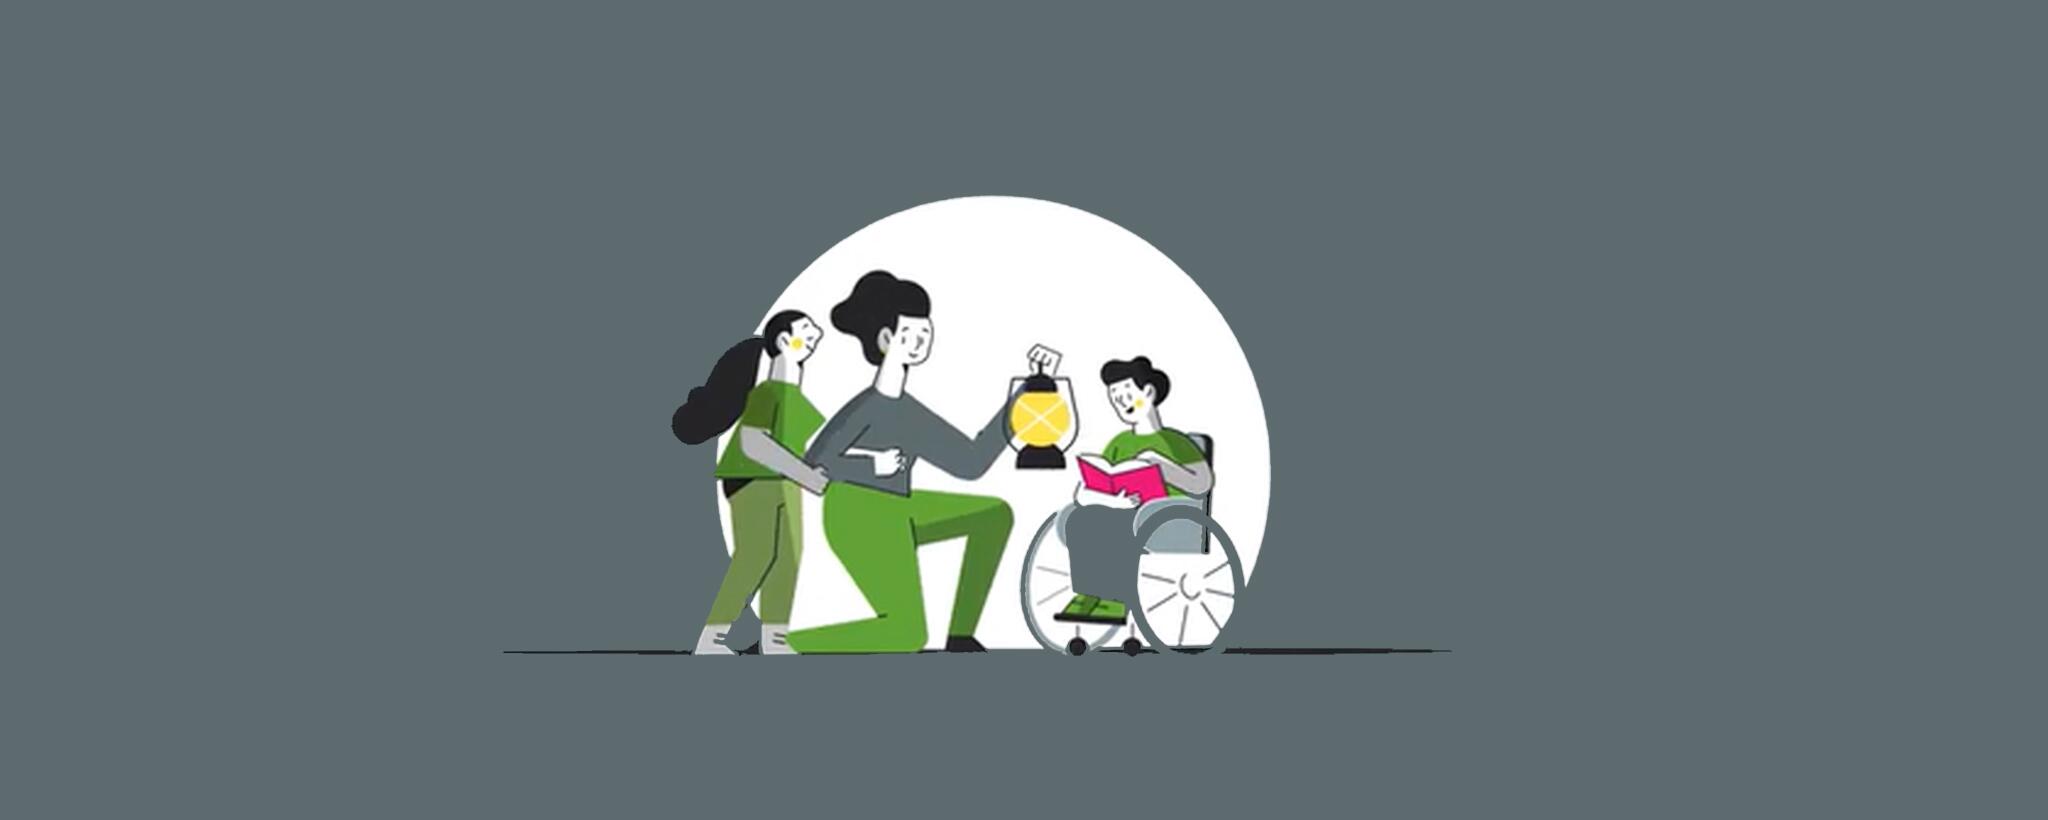 Mujer sosteniendo una linterna con dos niños, uno está en una silla de ruedas